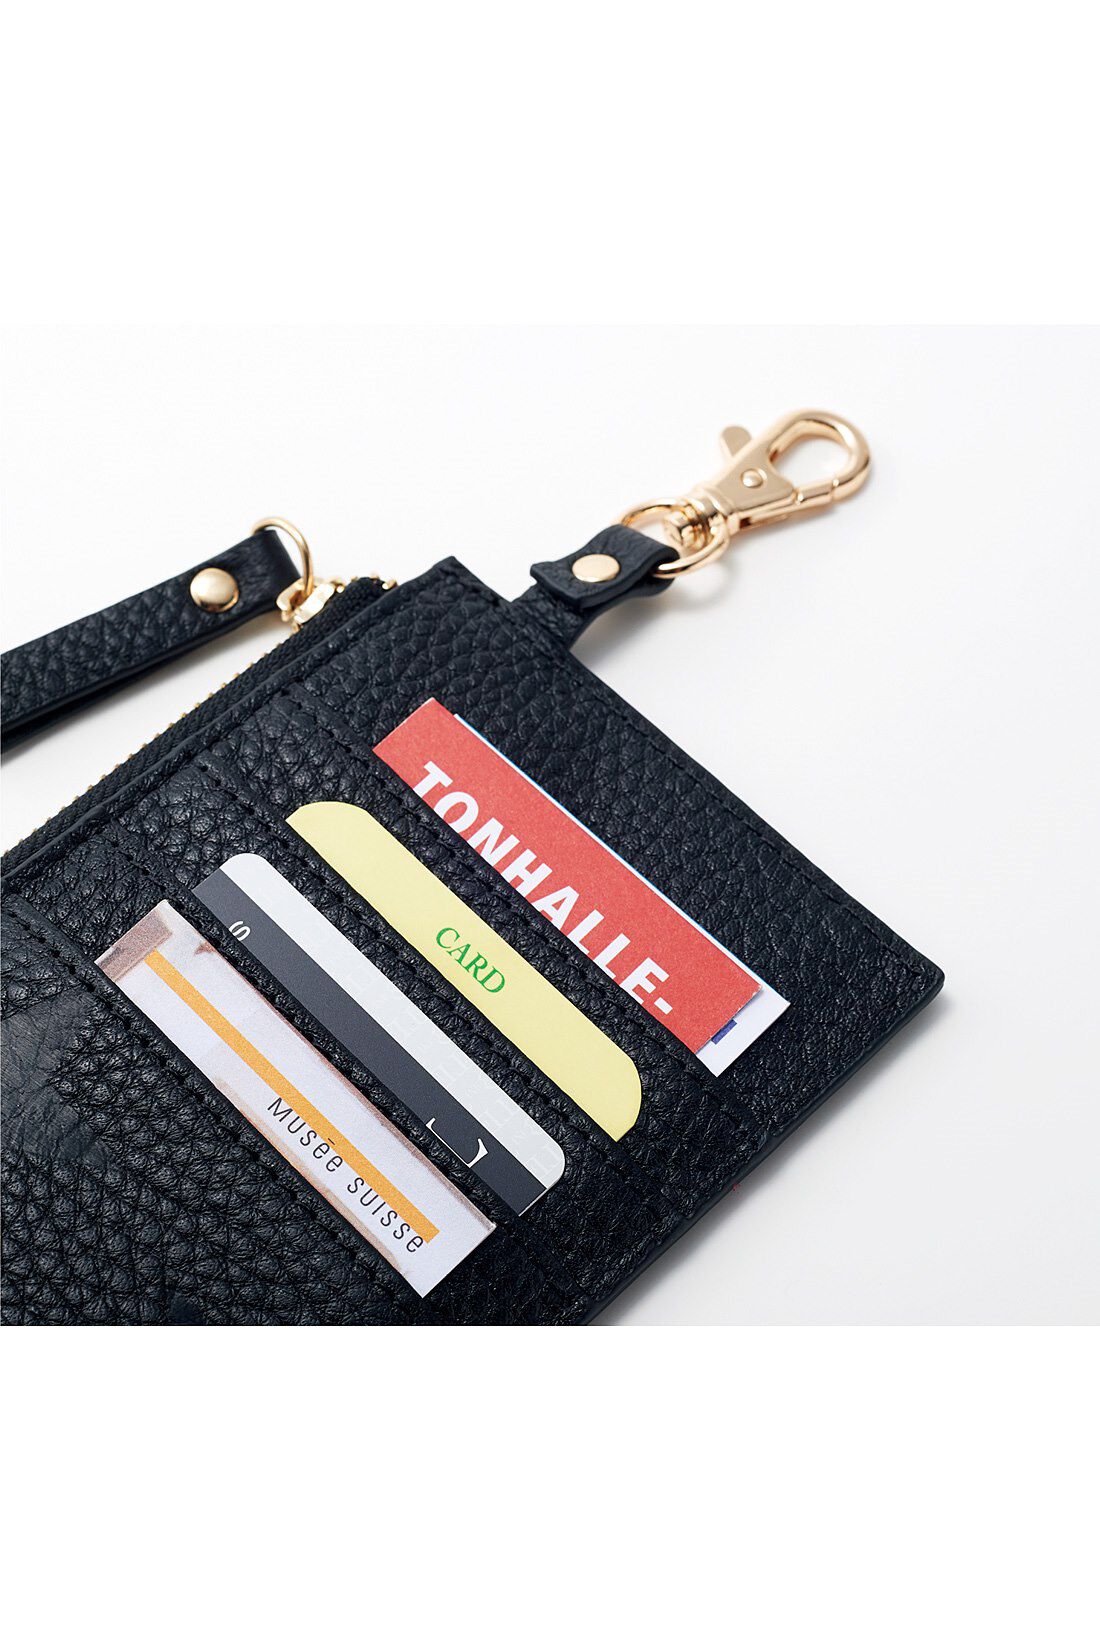 IEDIT[イディット]　本革が大人にうれしい スターエンボス加工のスリムミニ財布〈シルバー〉|使用頻度の高いカードや定期は外側に収納。